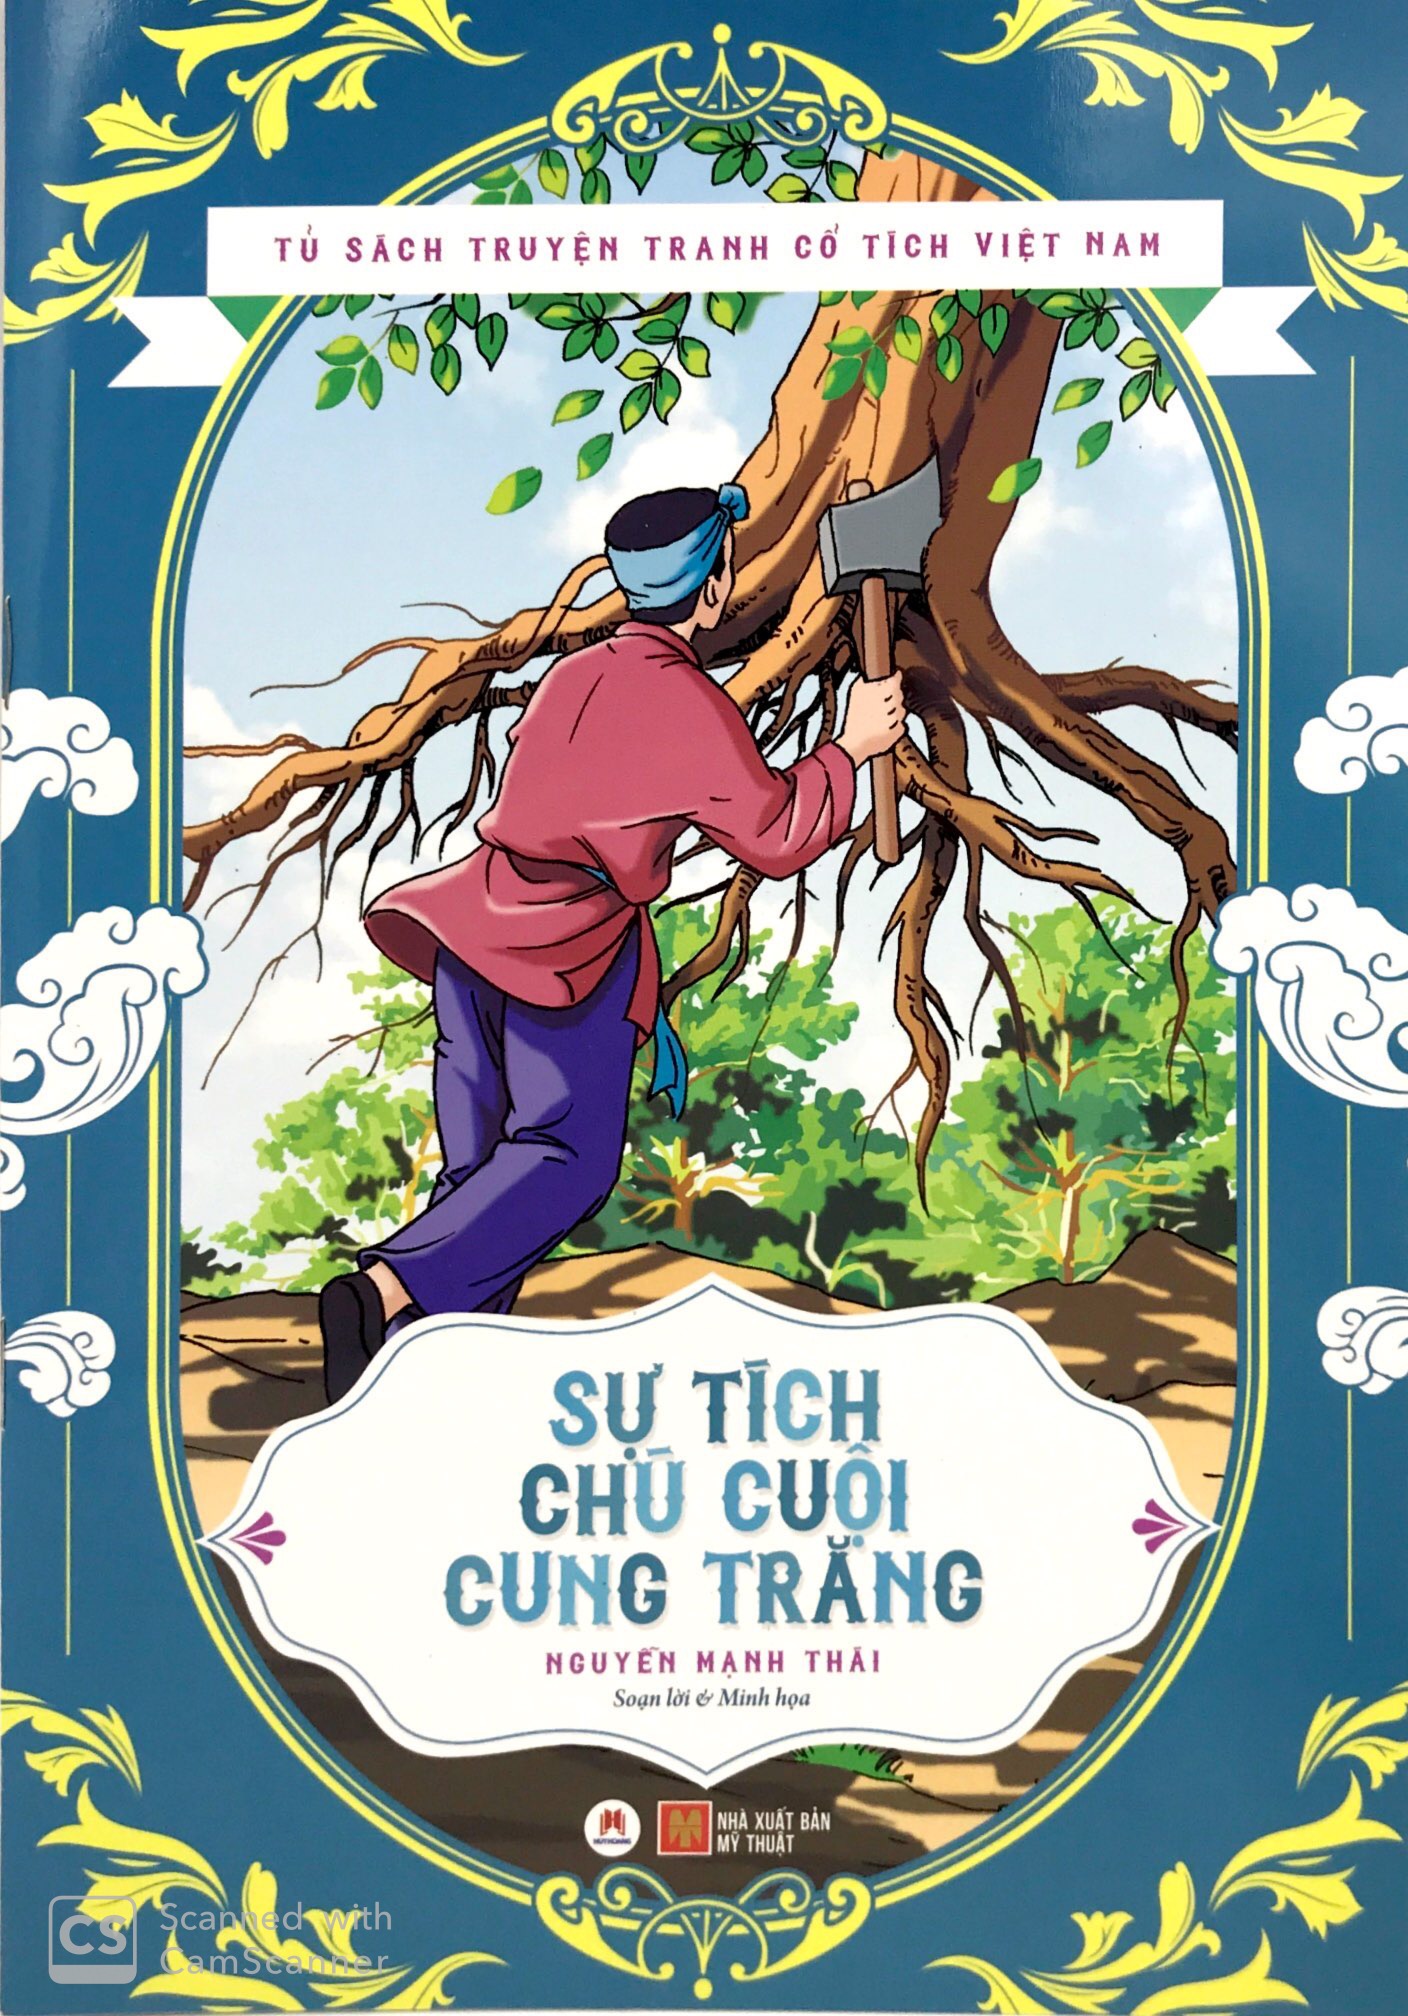 Khám phá tủ sách truyện tranh cổ tích Việt Nam với những tác phẩm đầy sáng tạo và màu sắc sặc sỡ! Hãy đọc những câu chuyện kinh điển về những anh hùng dũng cảm và những giấc mơ tuyệt vời của thế giới cổ tích. Tủ sách truyện tranh này sẽ khiến cho trẻ em và người lớn đều cảm thấy vui vẻ và thích thú.